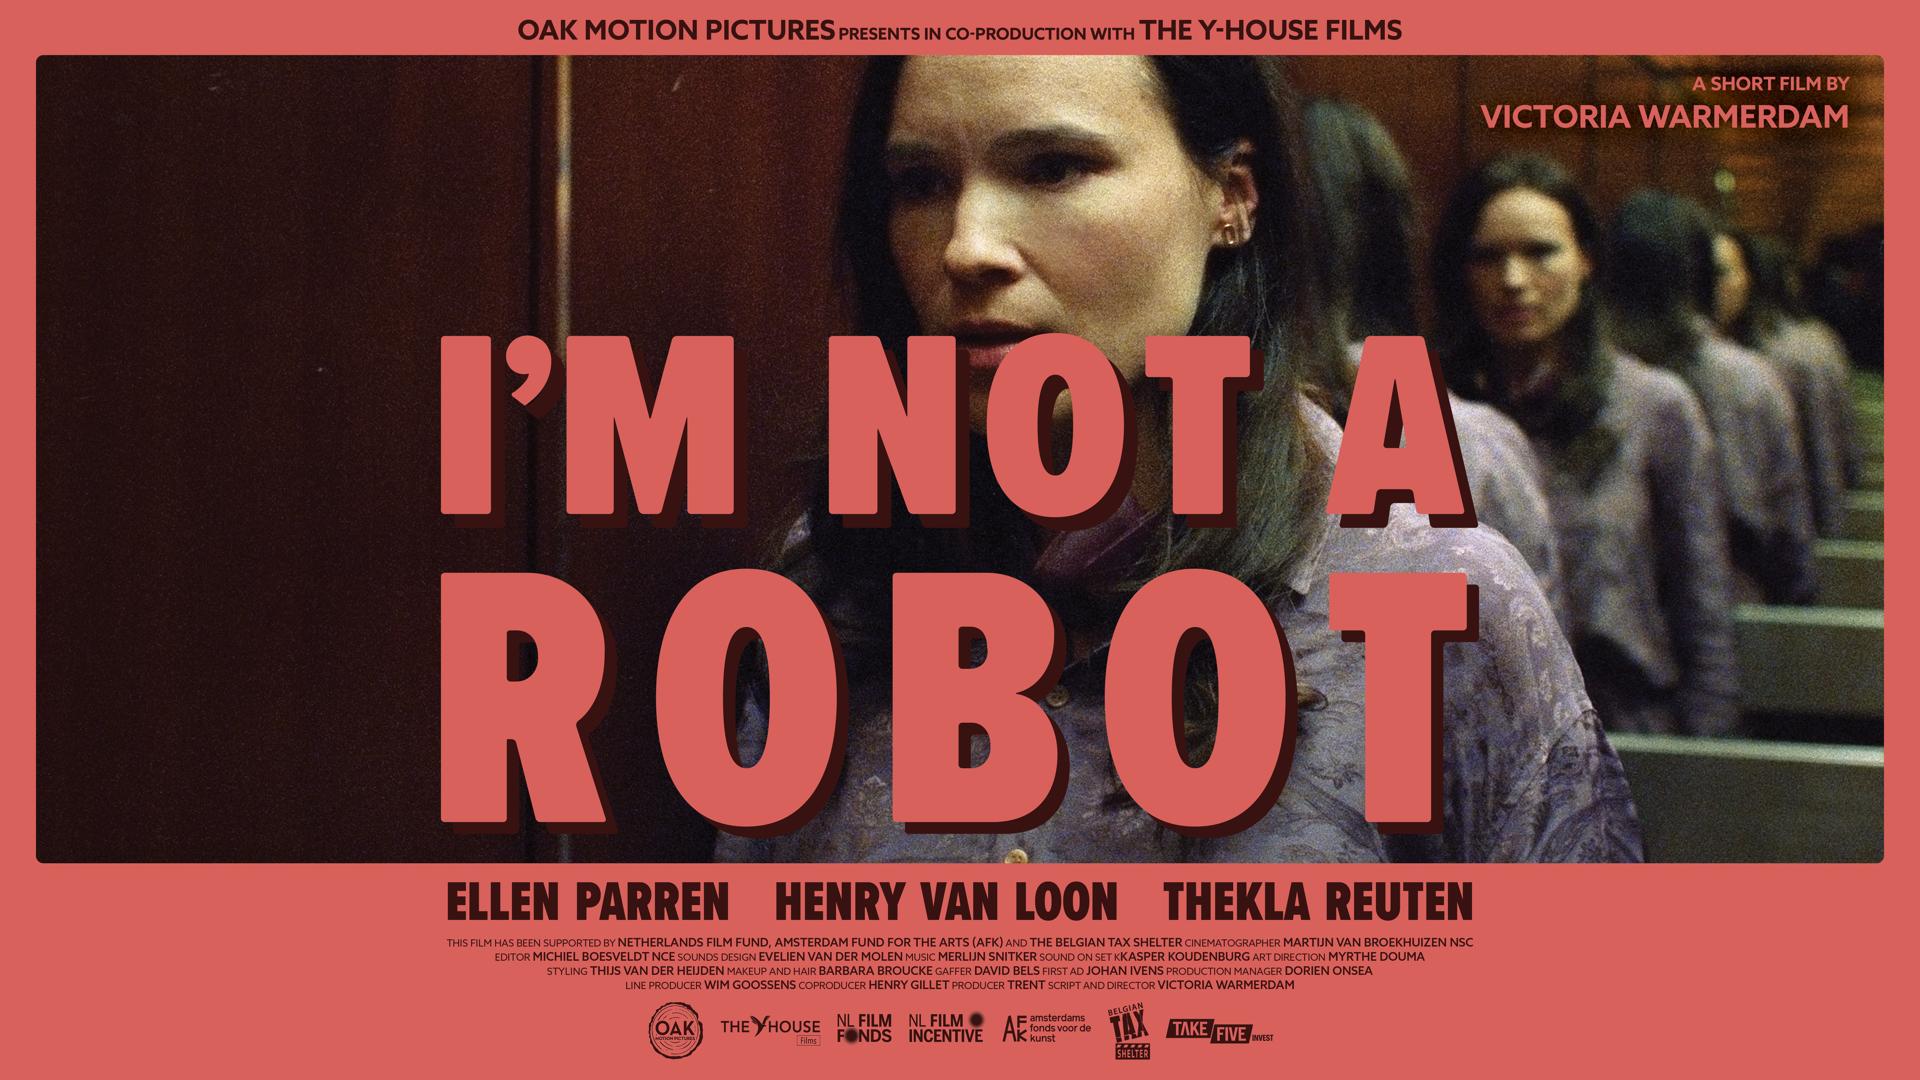 I'm not a robot